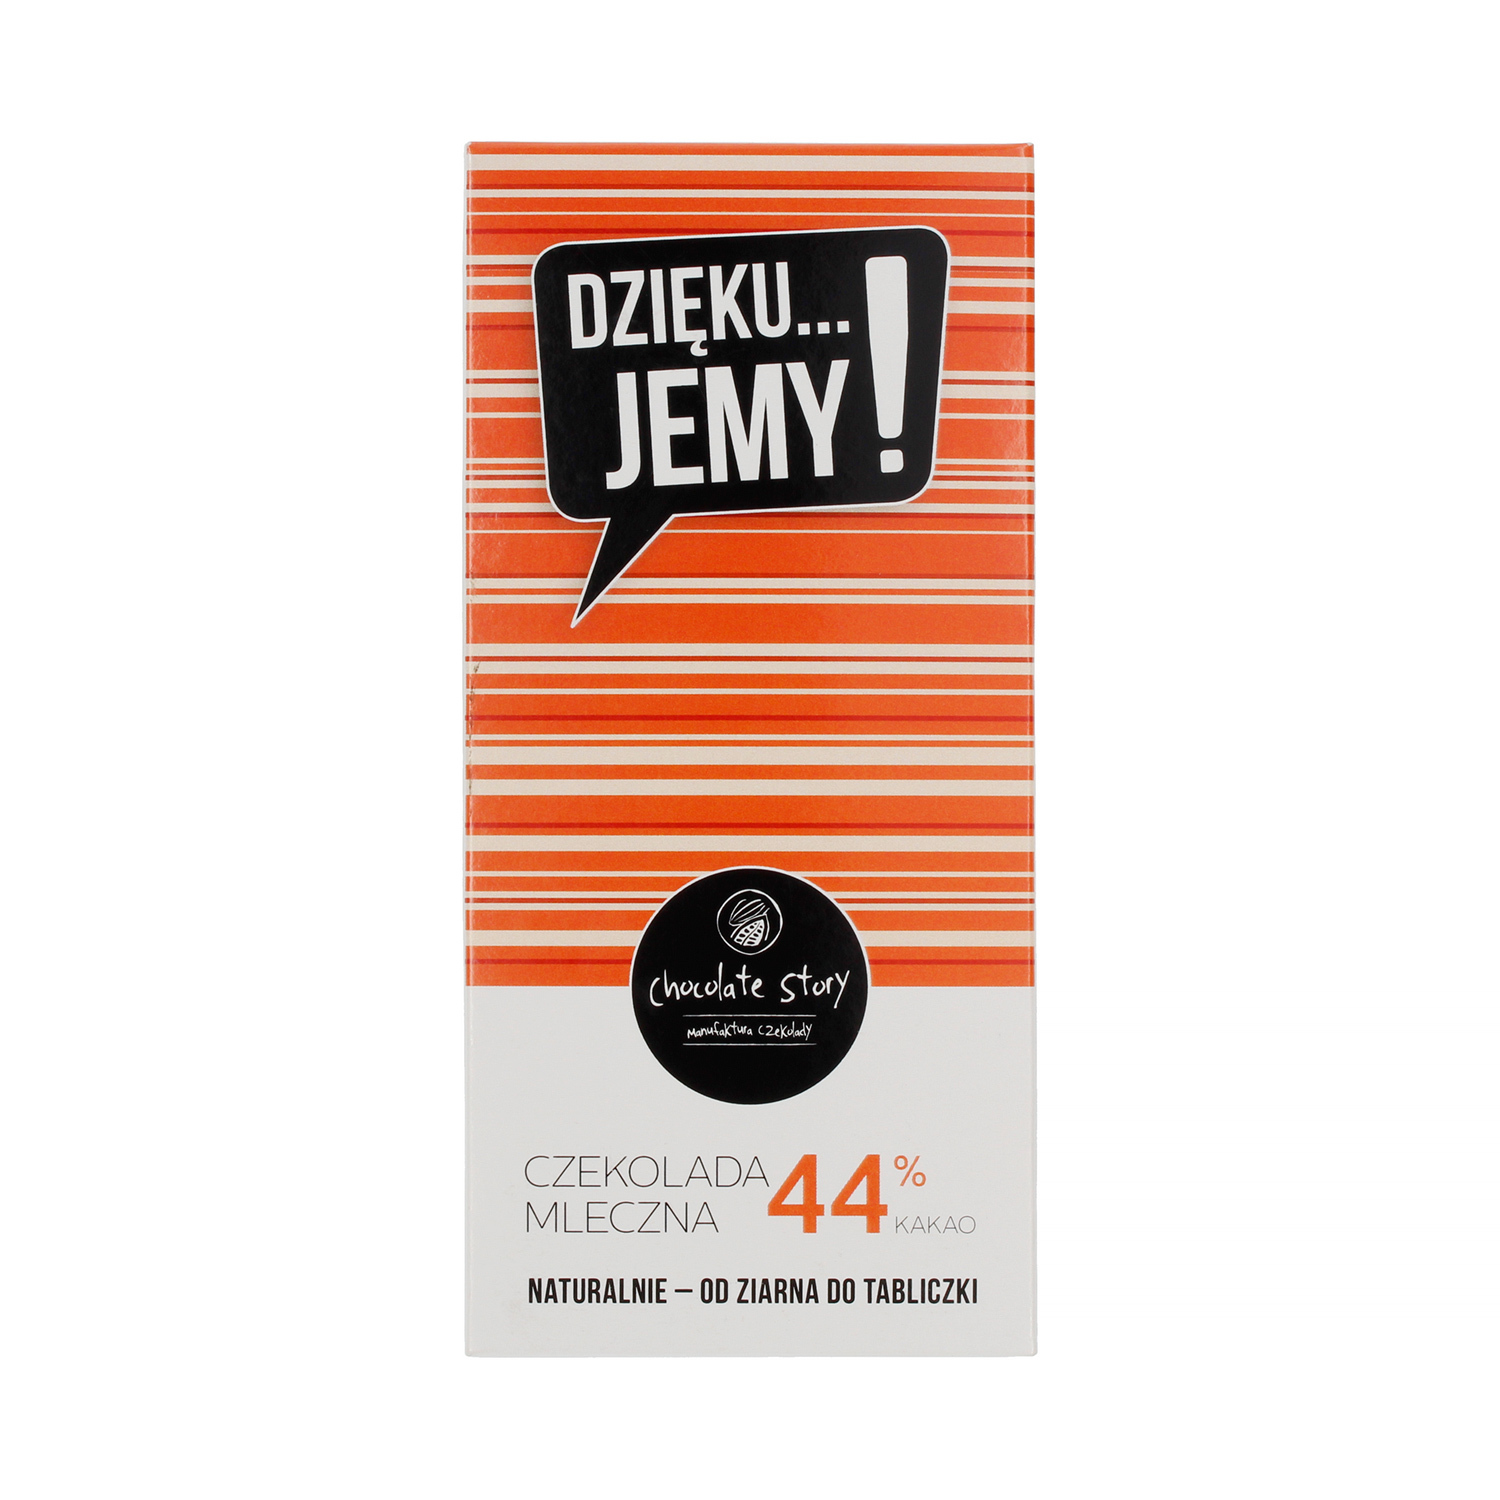 Manufaktura Czekolady - Czekolada 44% DZIĘKU...JEMY! - Pomarańczowe opakowanie